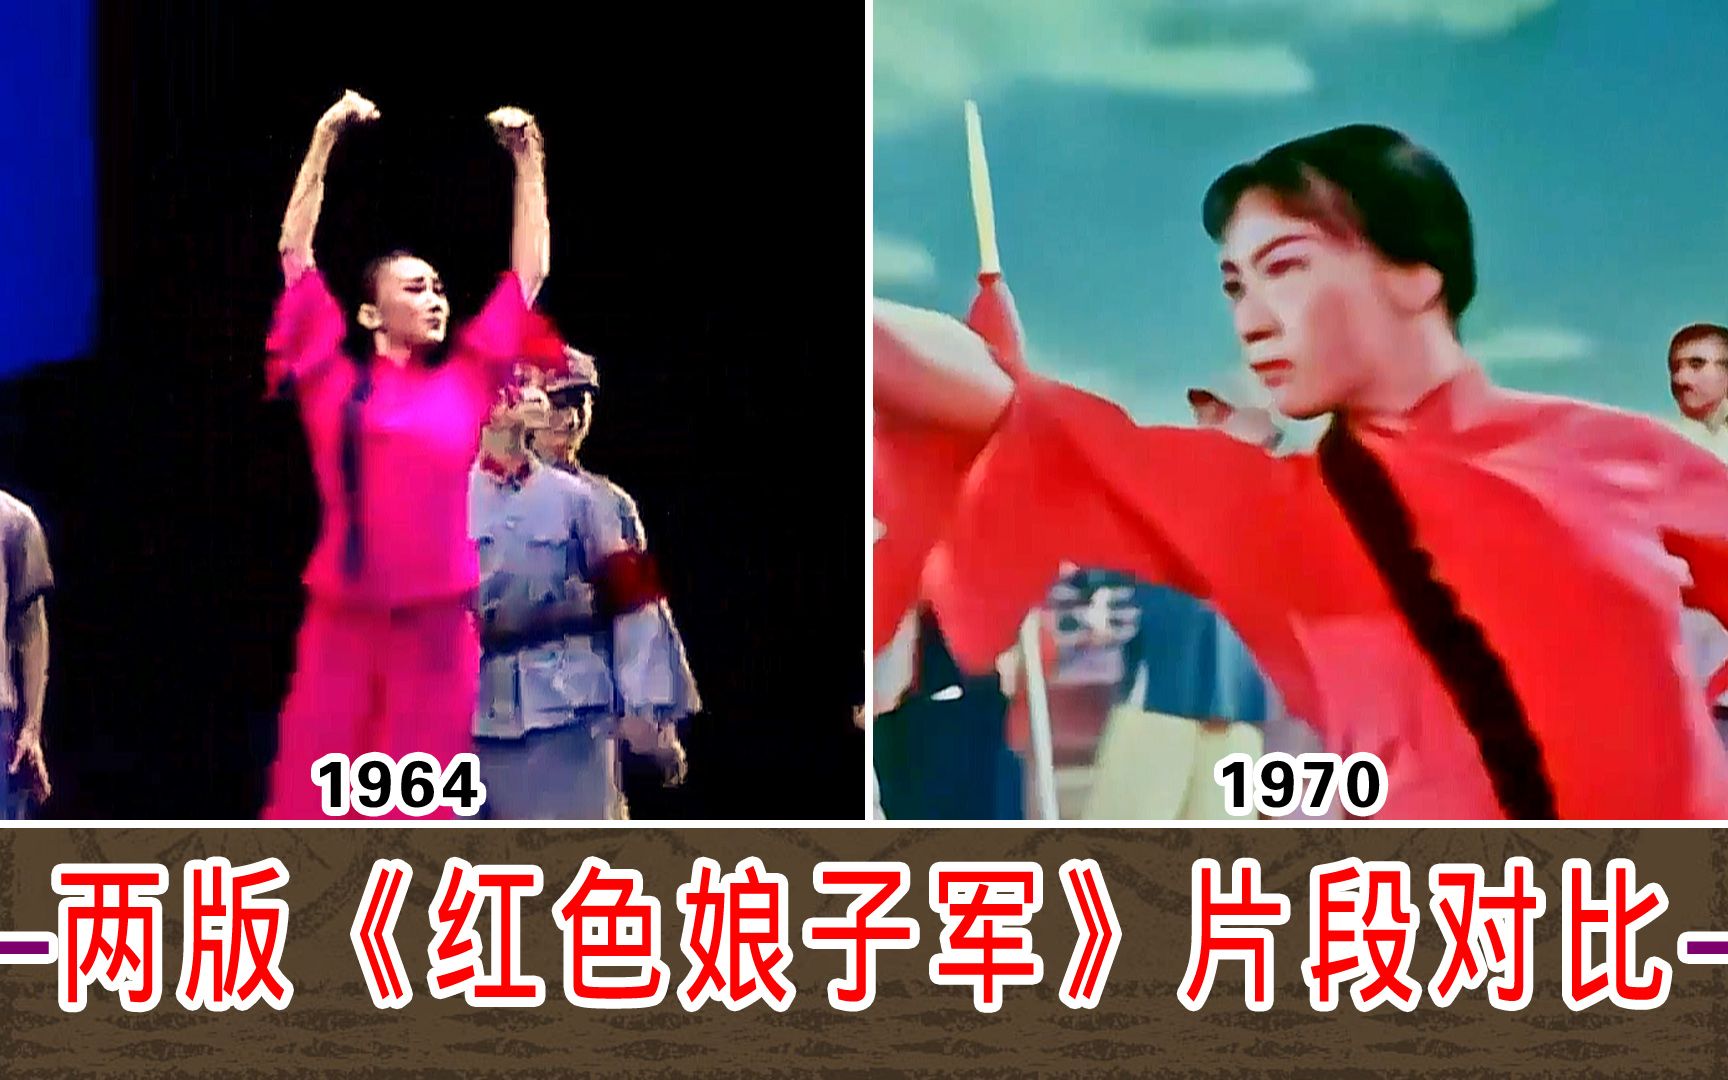 两版《红色娘子军》片段对比【1964版-1970版】芭蕾舞剧 第二场-后半场